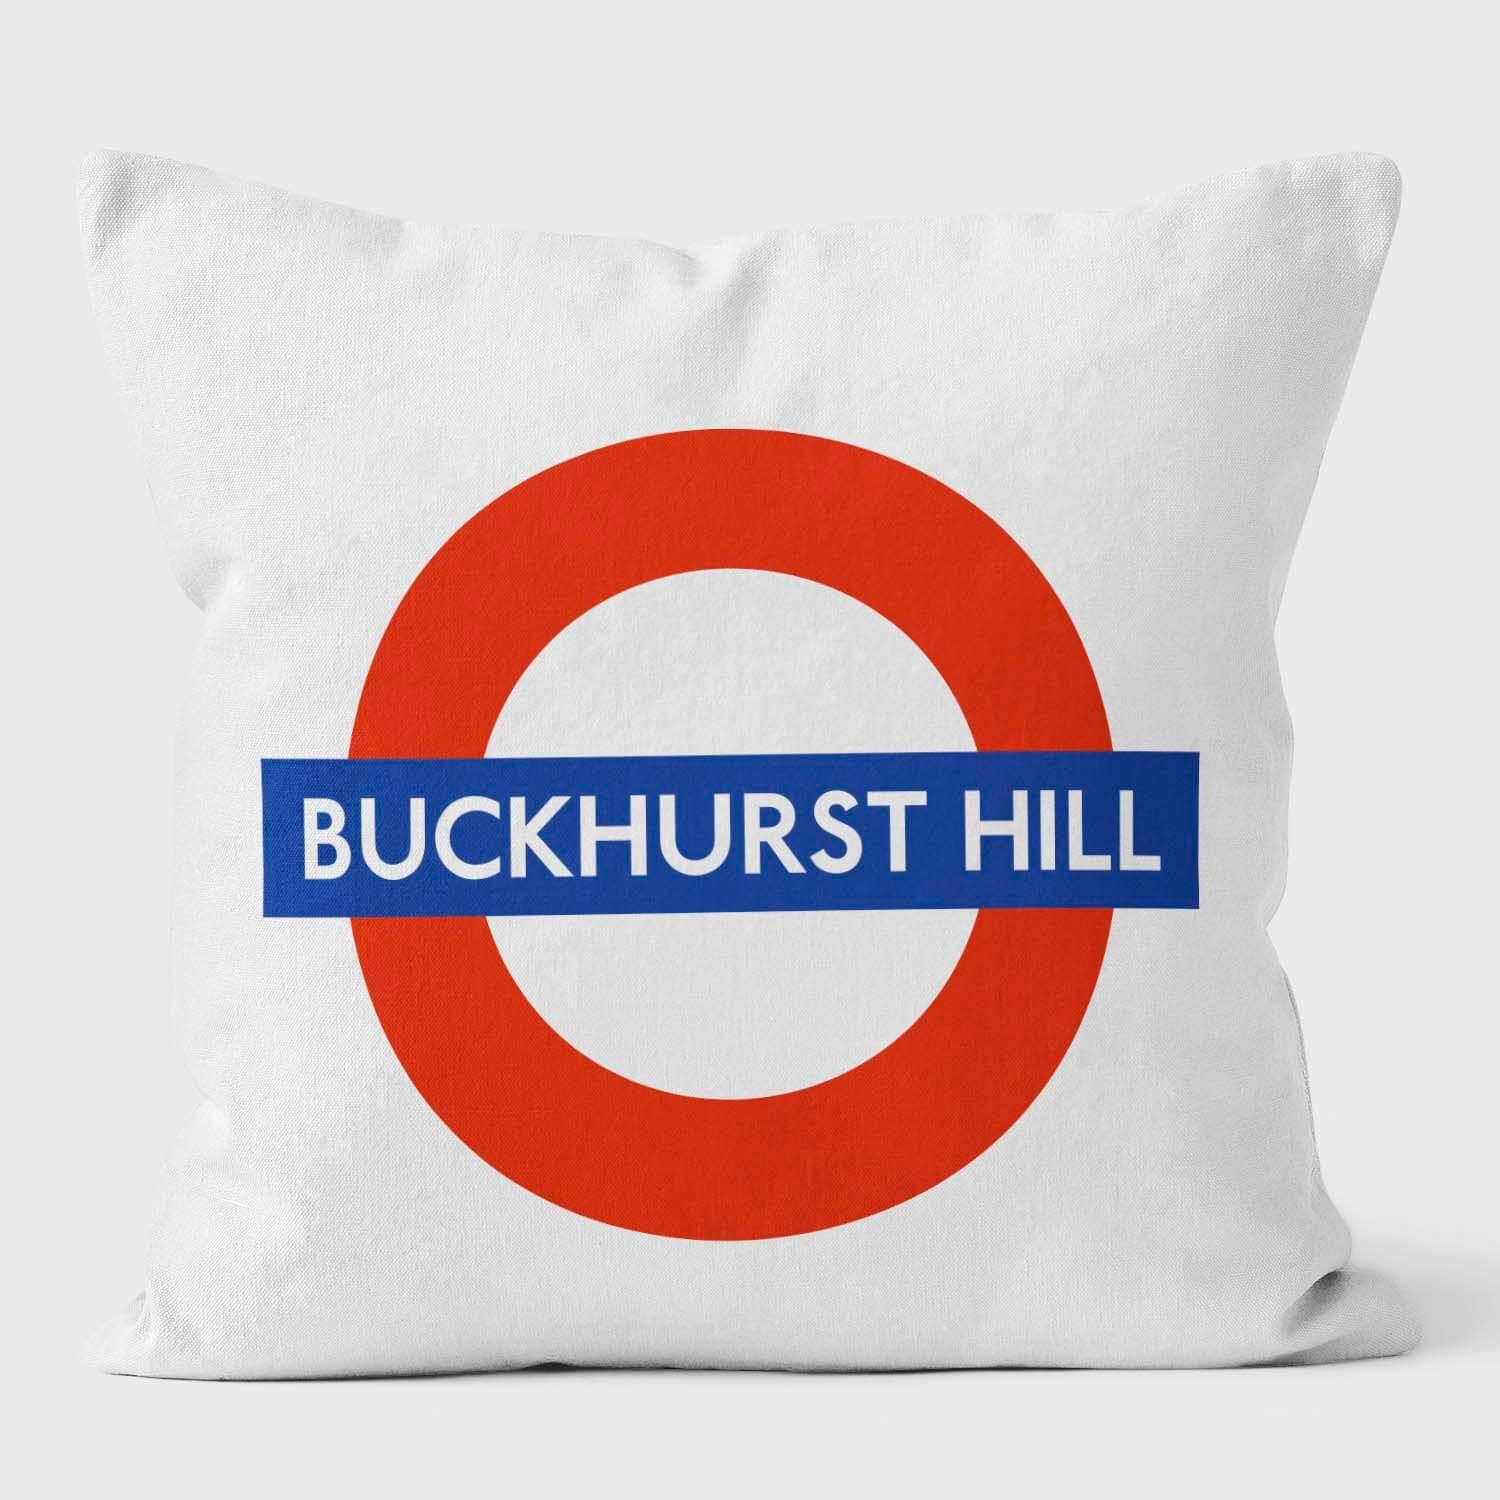 Buckhurst Hill London Underground Tube Station Roundel Cushion - Handmade Cushions UK - WeLoveCushions